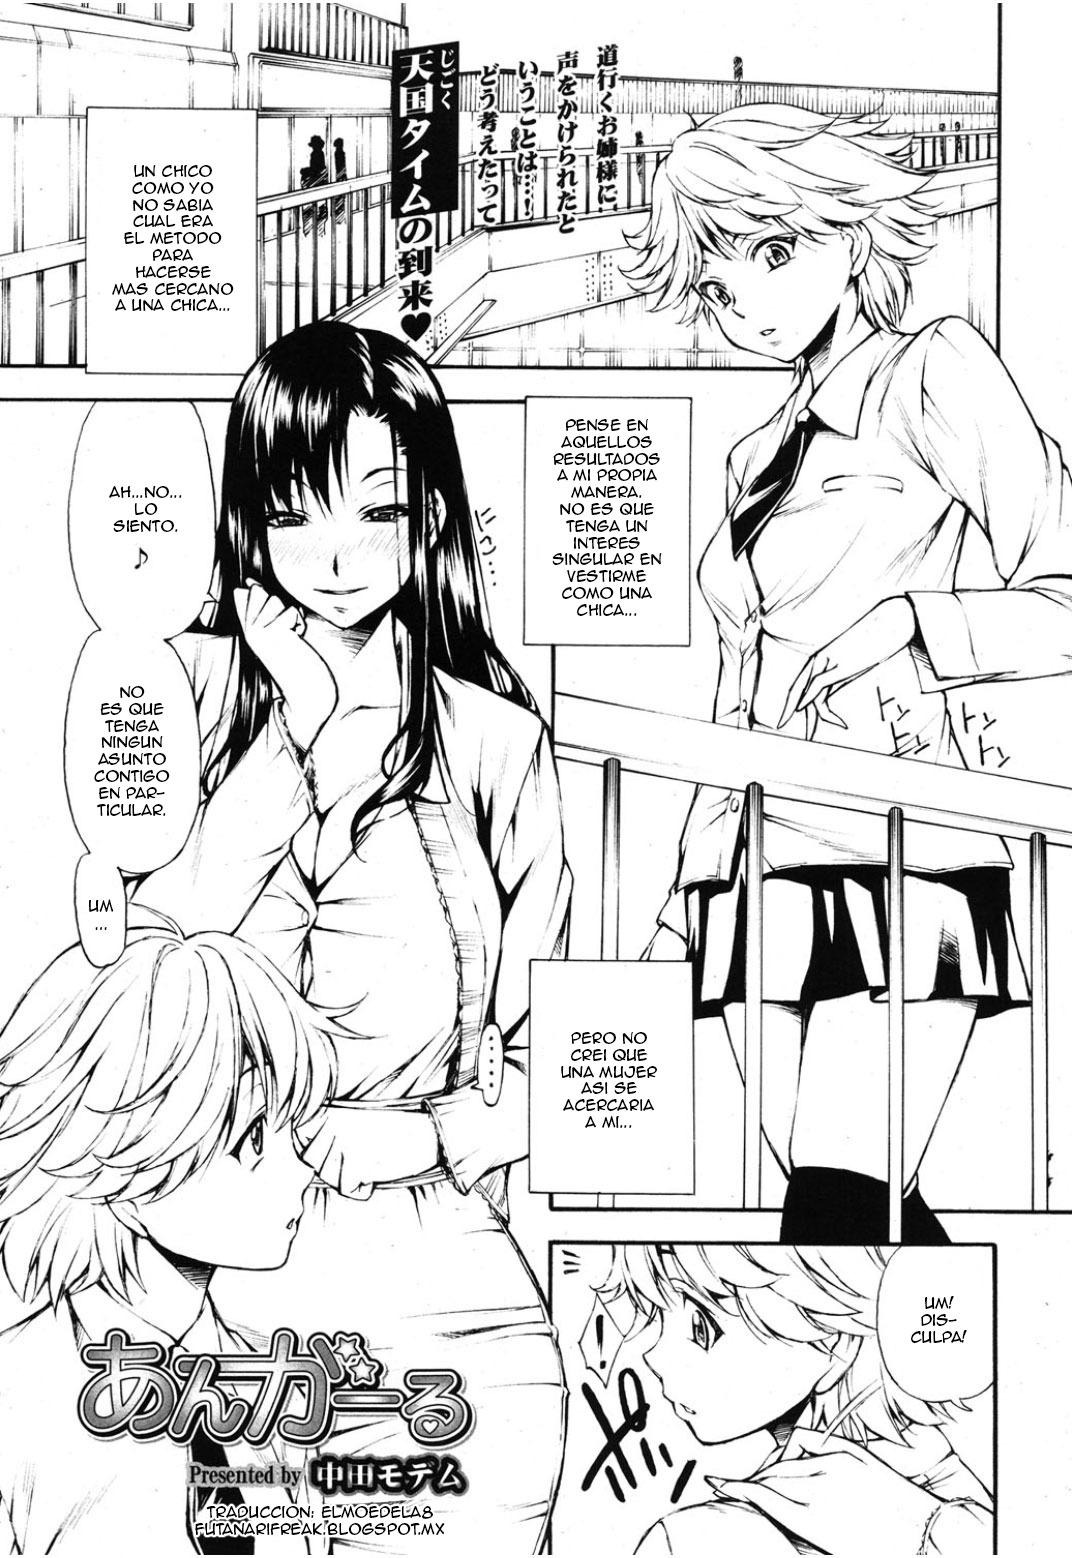 No Es Una Chica [Manga] [Crossdresser] [Futanari]